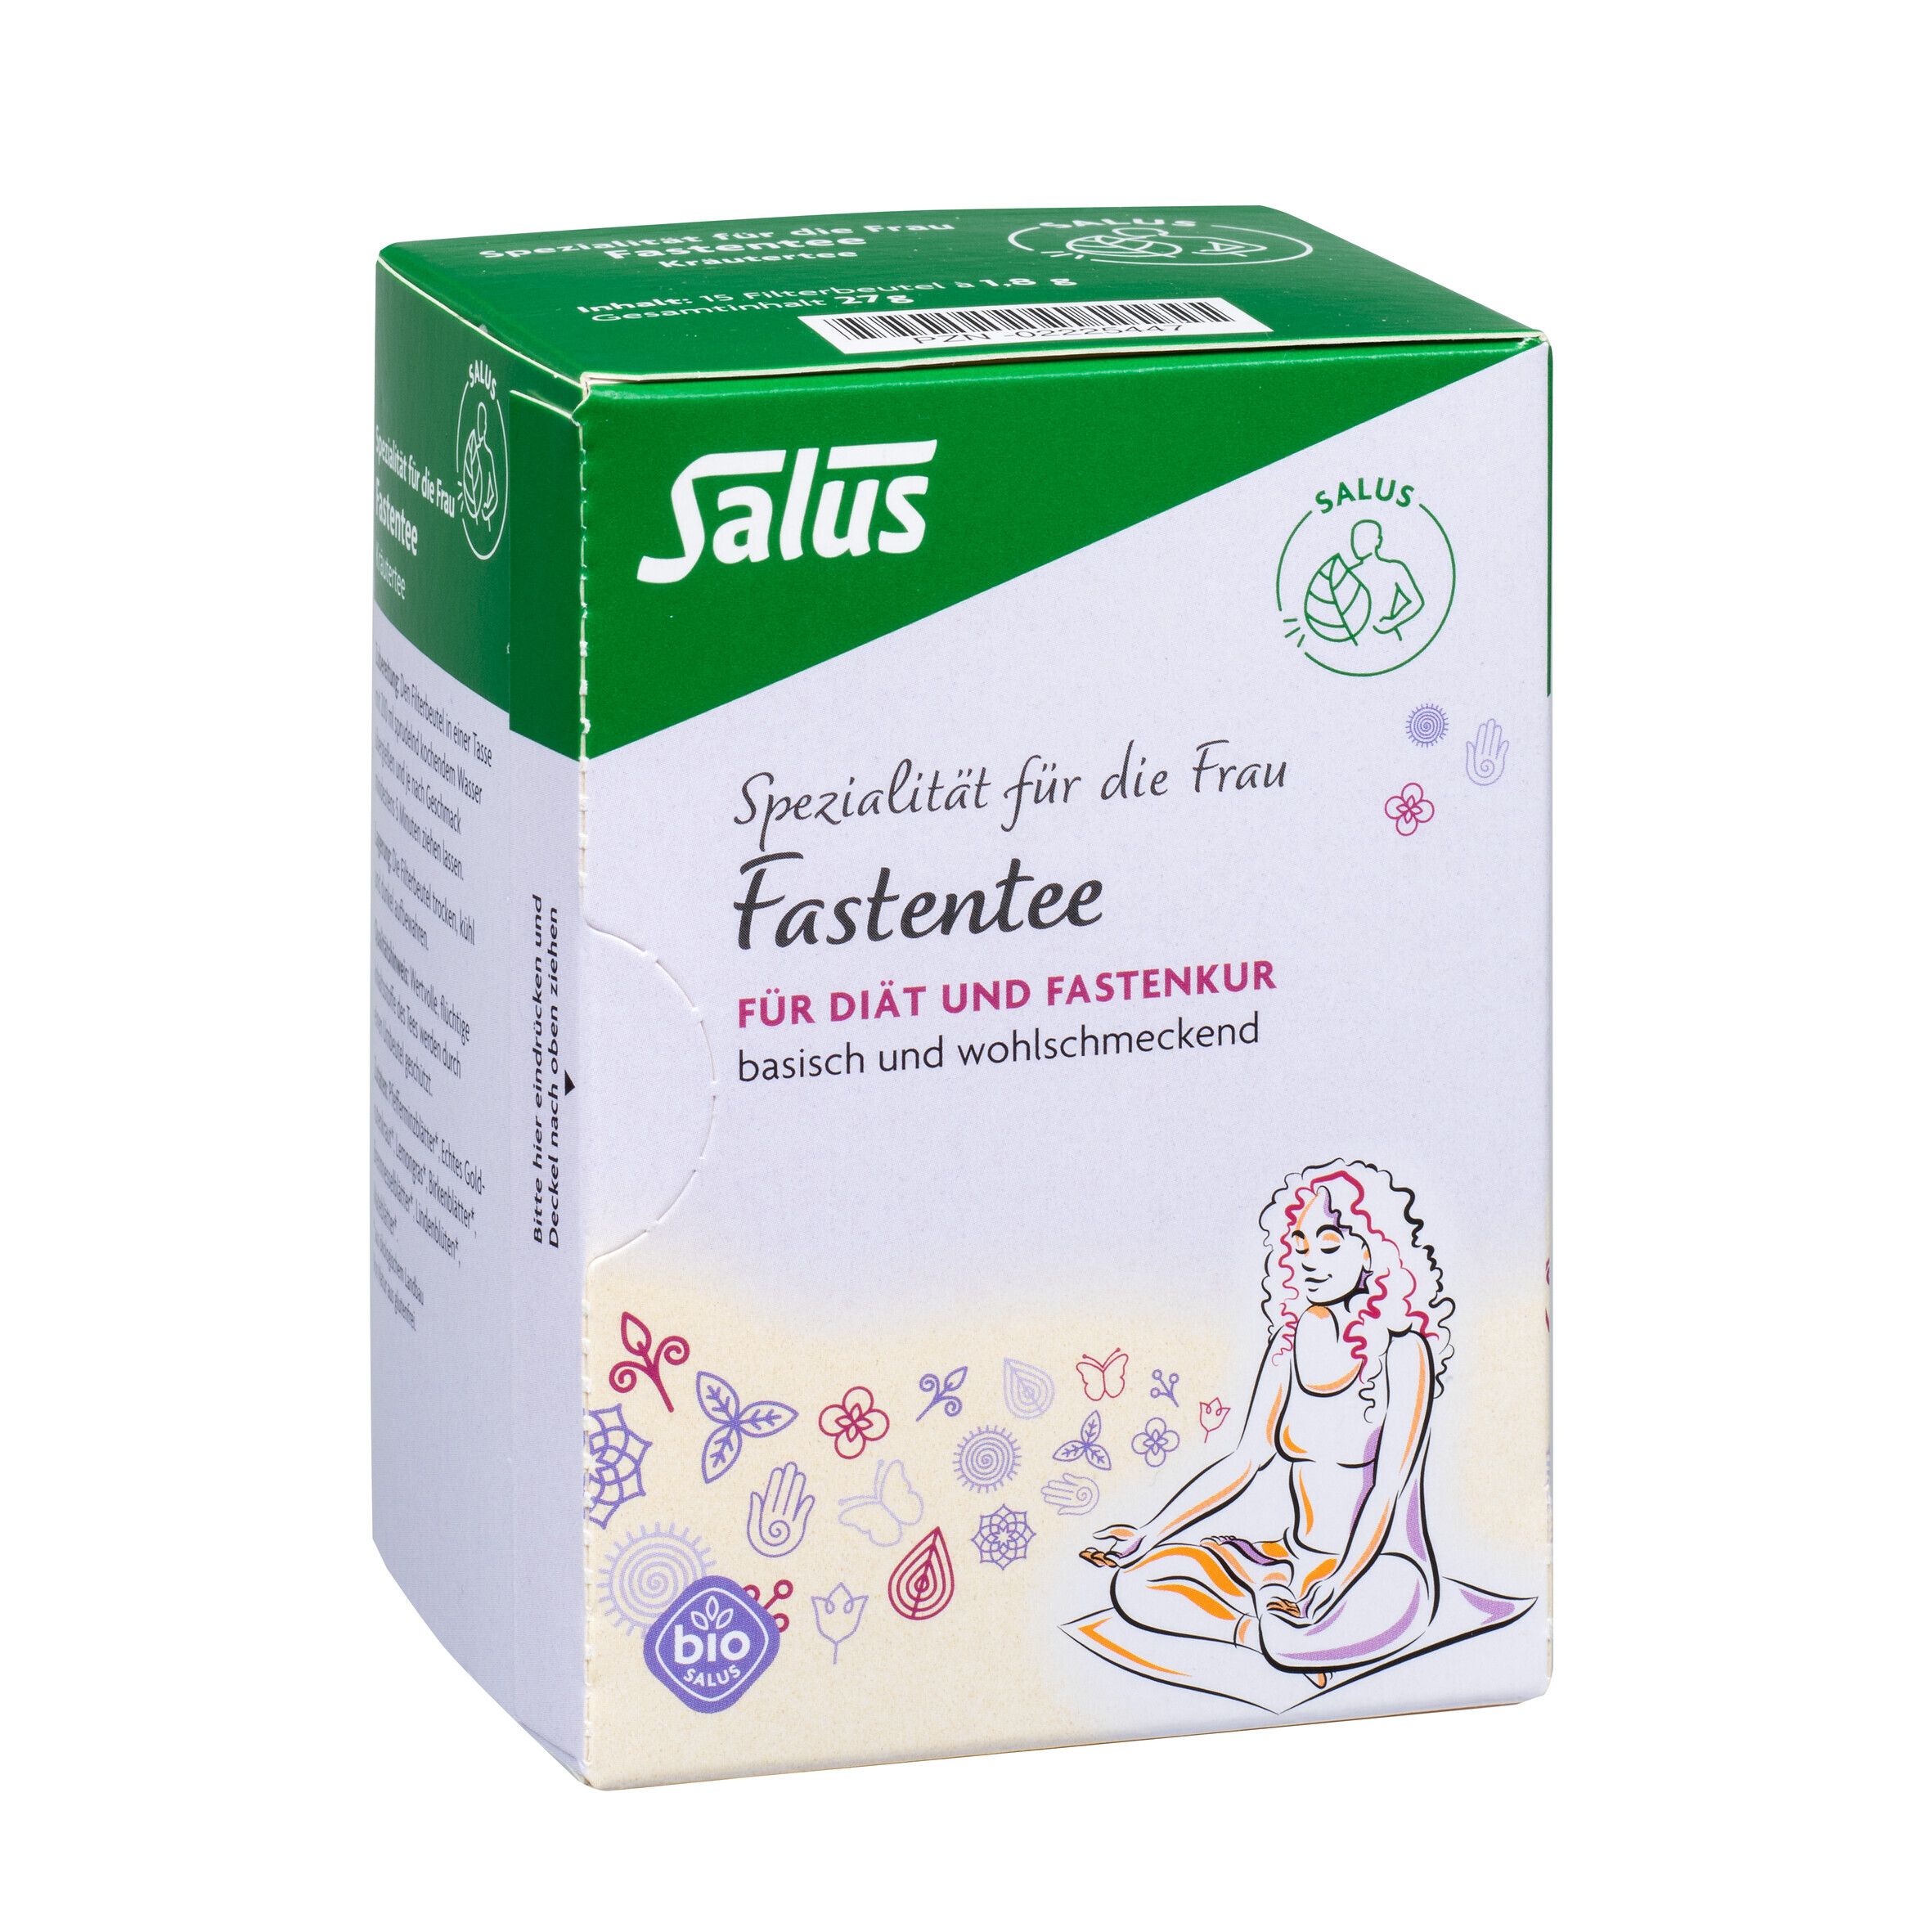 Salus® Kräutertee-Spezialitäten für die Frau Fastentee